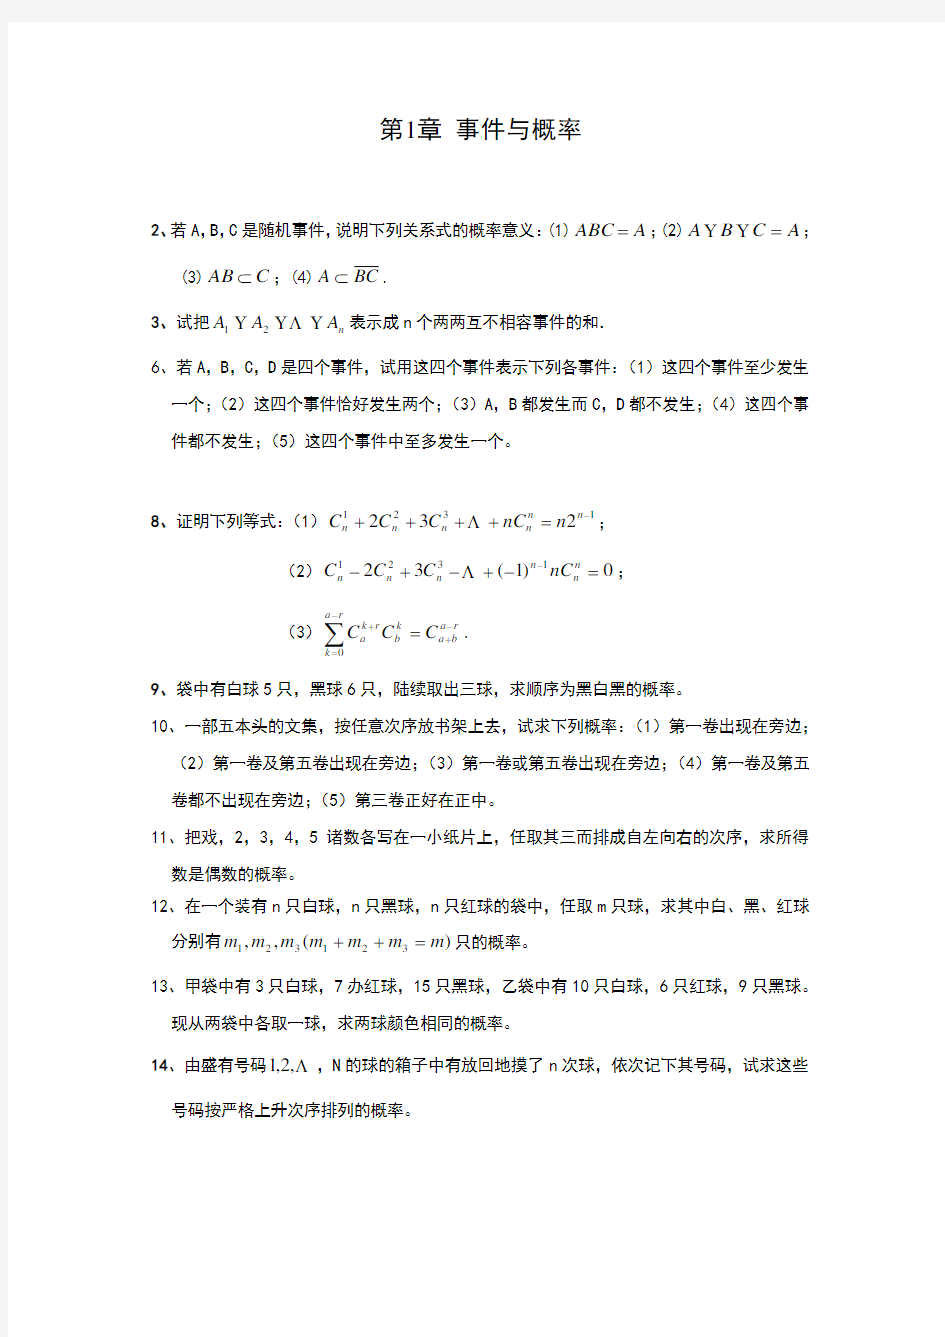 李贤平 《概率论与数理统计 第一章》答案